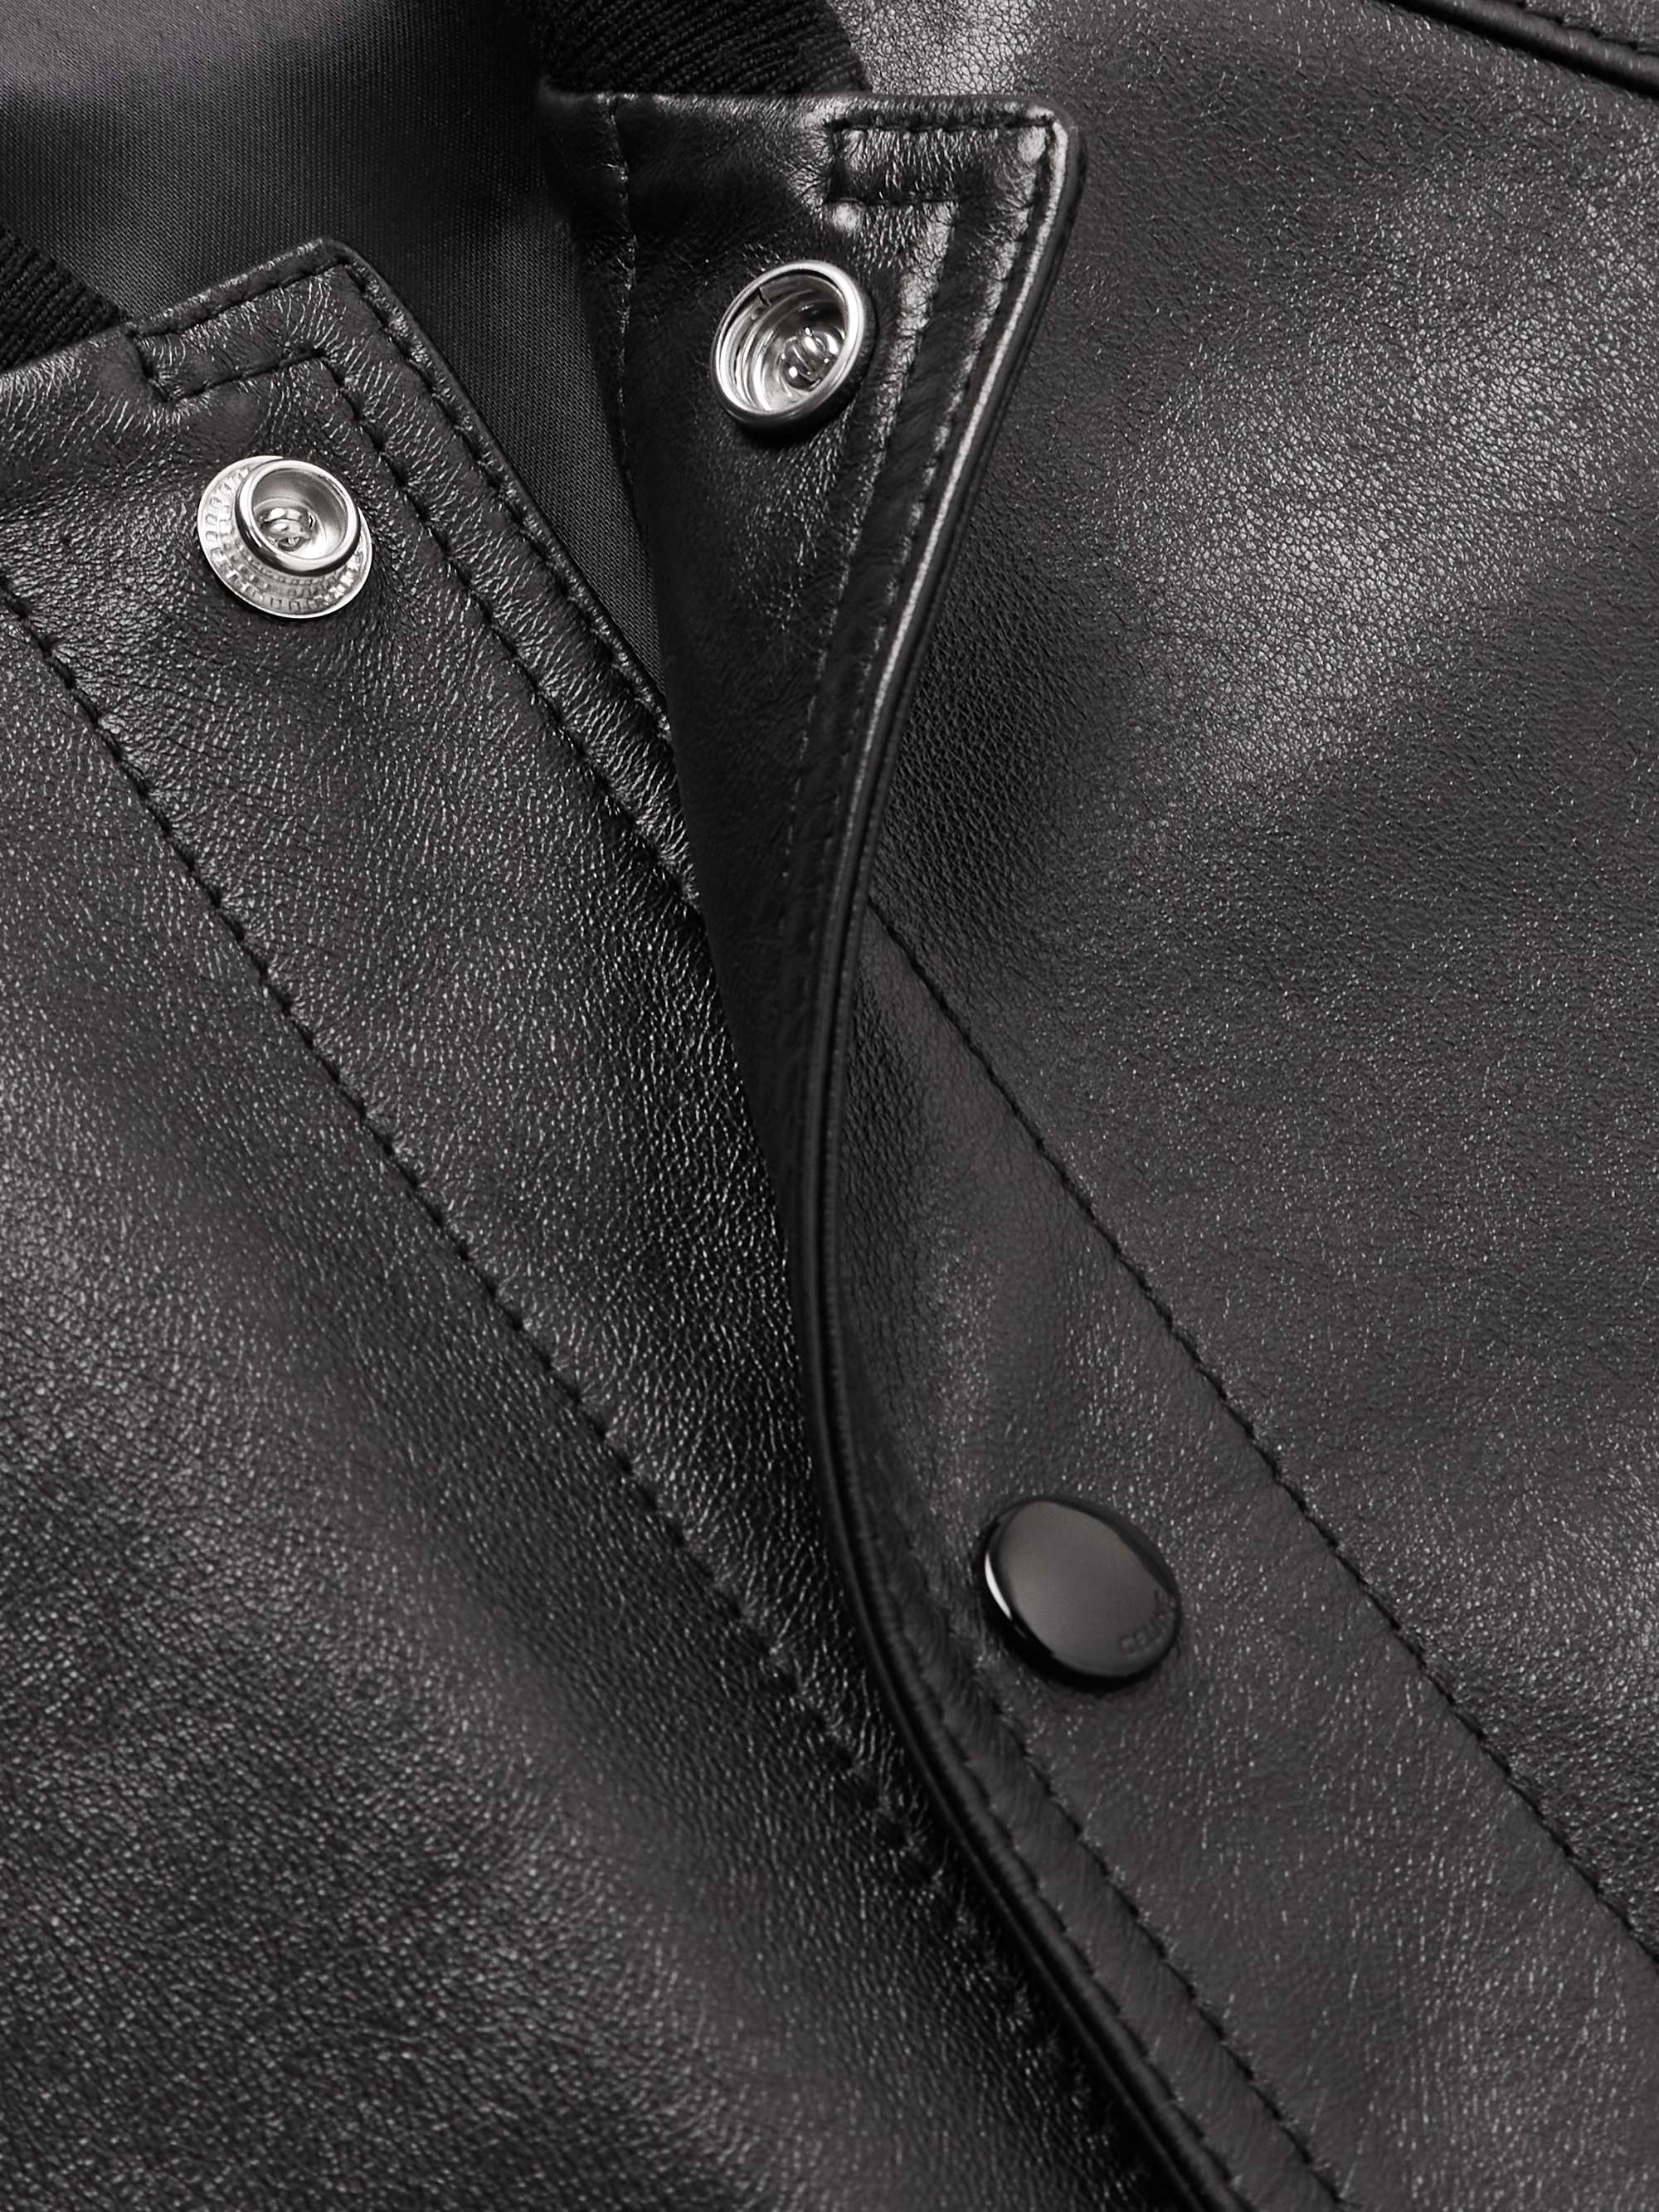 CELINE HOMME Leather Bomber Jacket for Men | MR PORTER